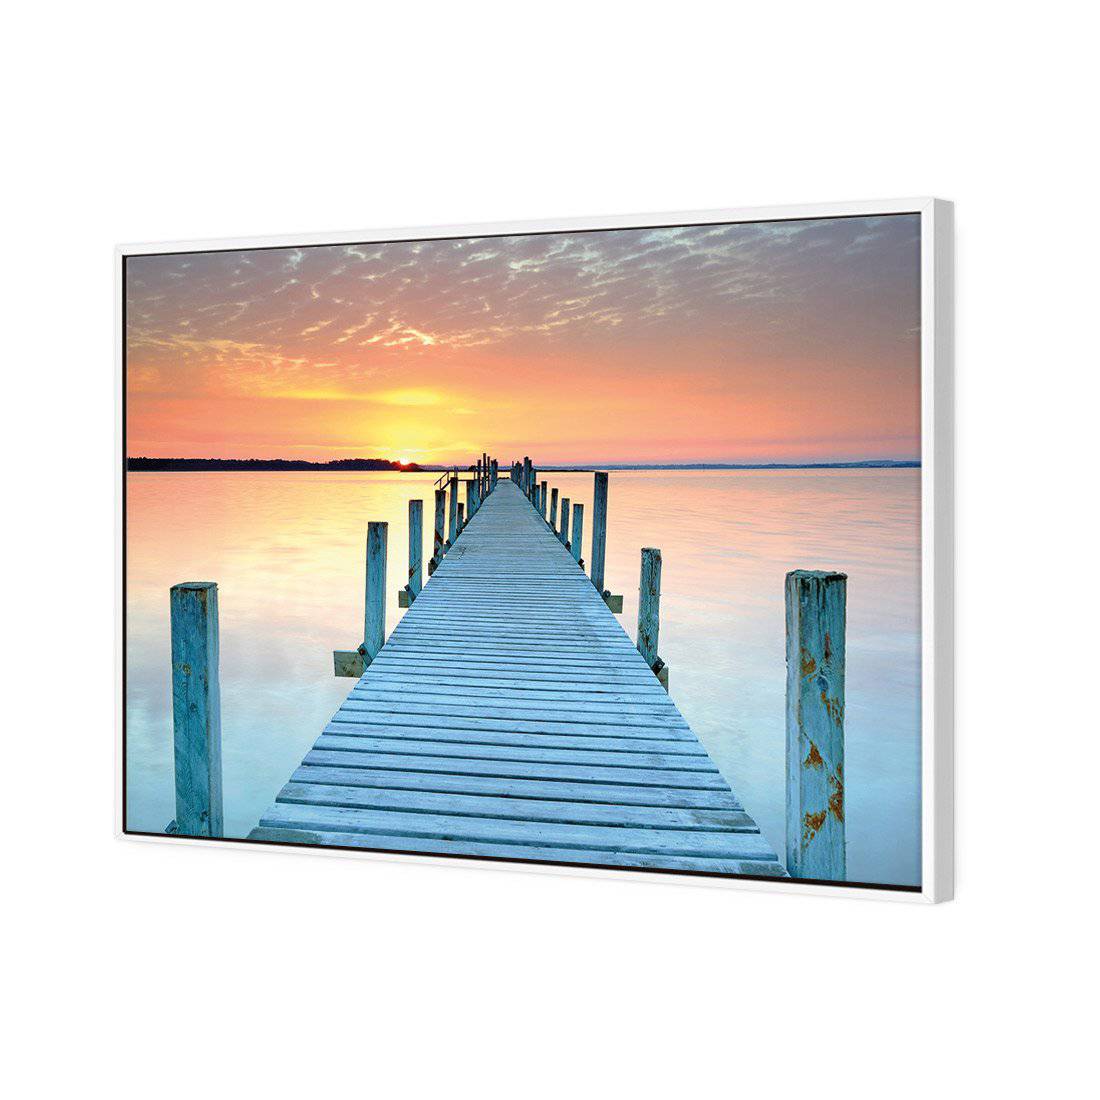 Sunset Pier Canvas Art-Canvas-Wall Art Designs-45x30cm-Canvas - White Frame-Wall Art Designs